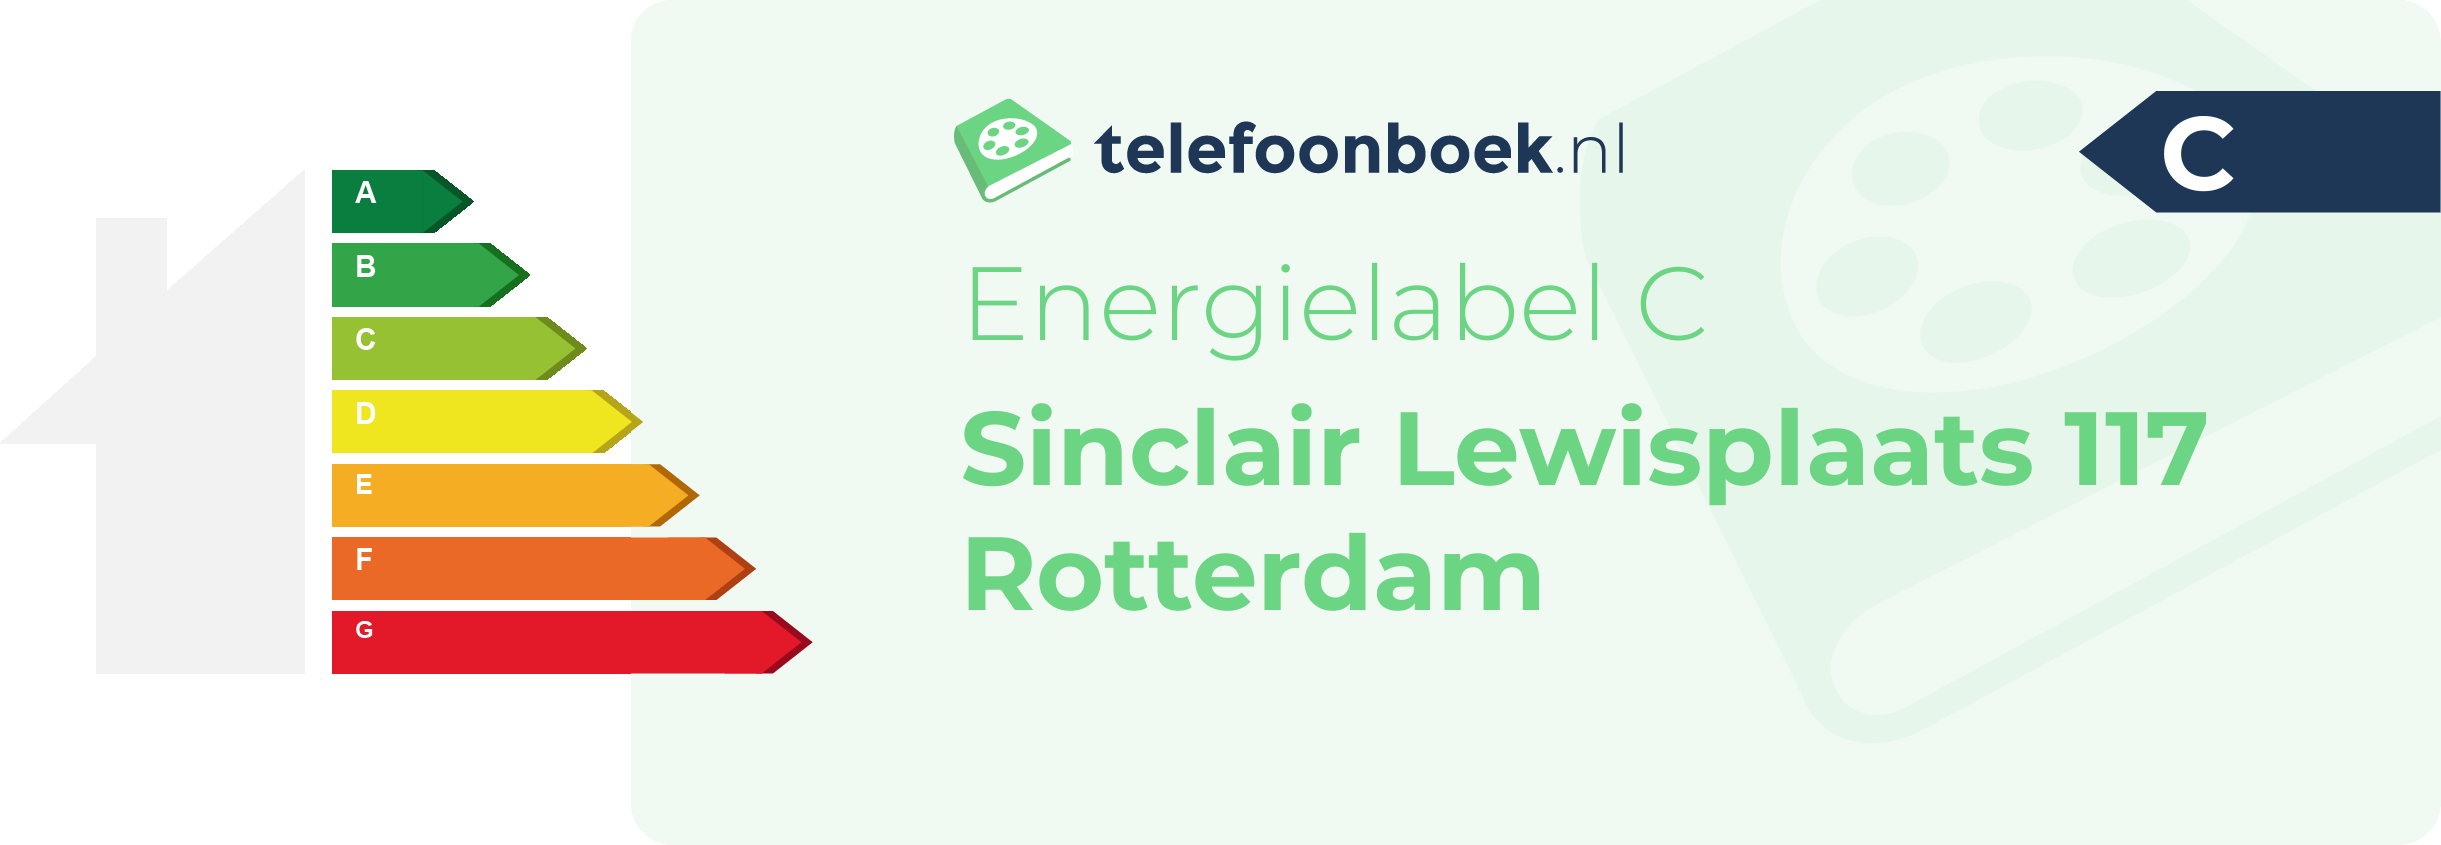 Energielabel Sinclair Lewisplaats 117 Rotterdam